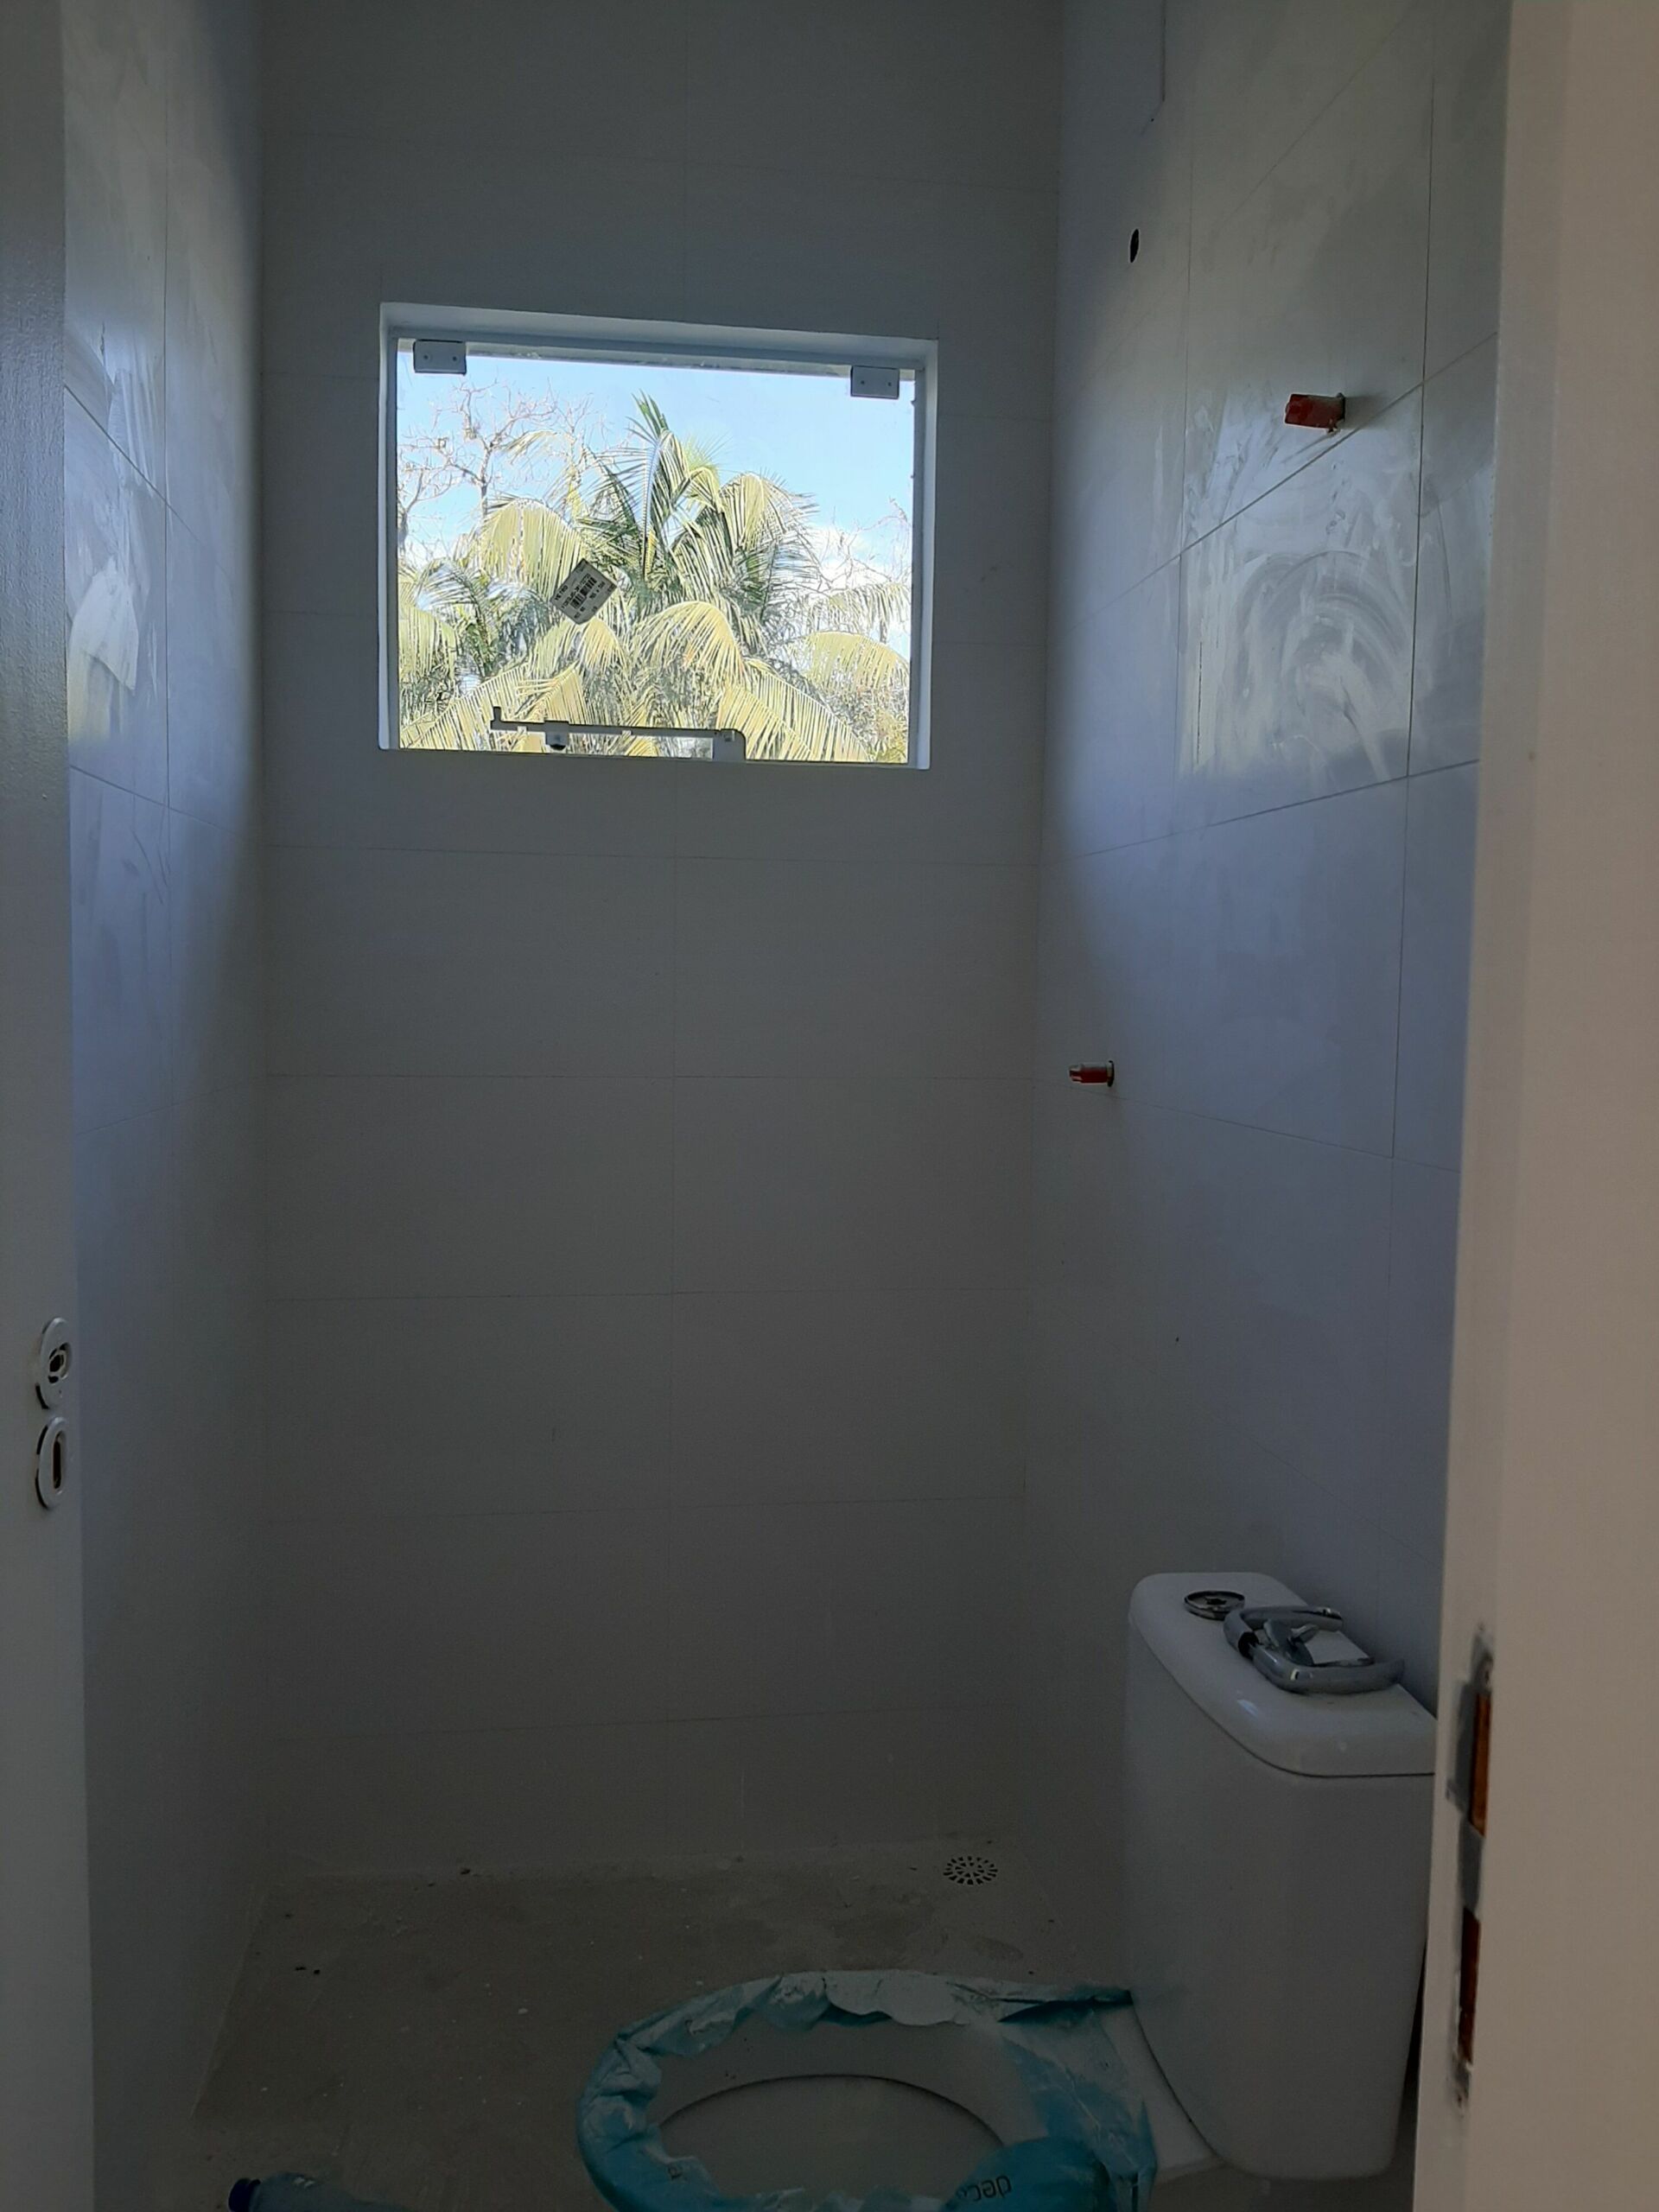 Sobrado Geminado – 2 e 3 dormitórios – Em condomínio – Vila Nova